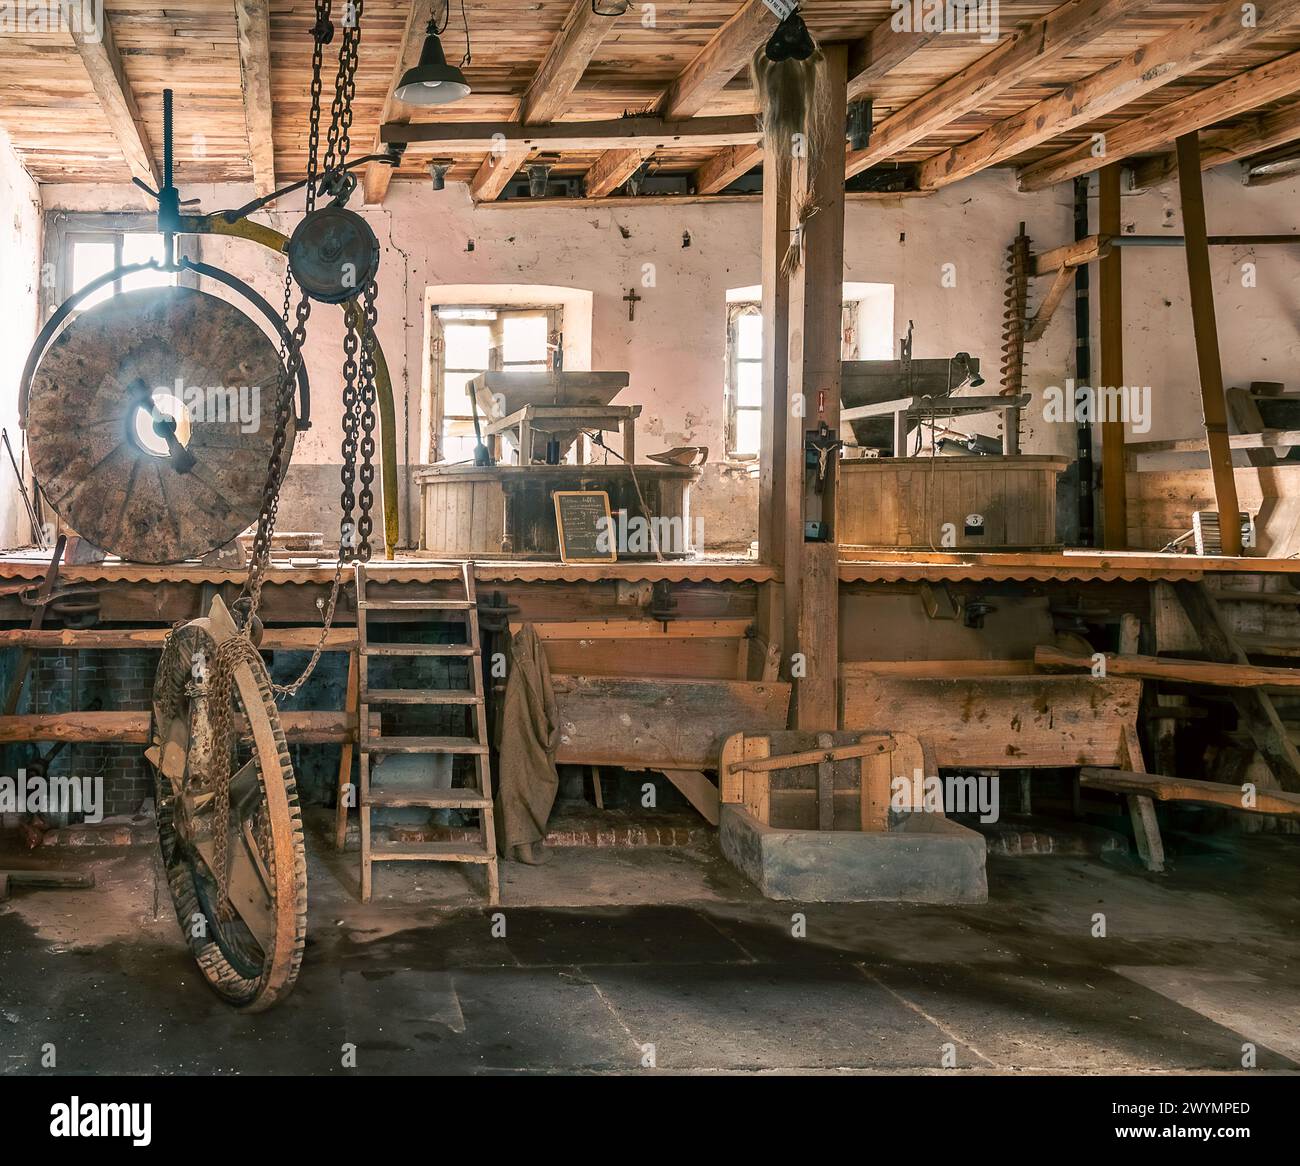 Intérieur de l'ancien moulin à eau italien de la vallée du Pô dans la province de Cuneo, Italie. Structure de moulin en bois avec grande meule Banque D'Images